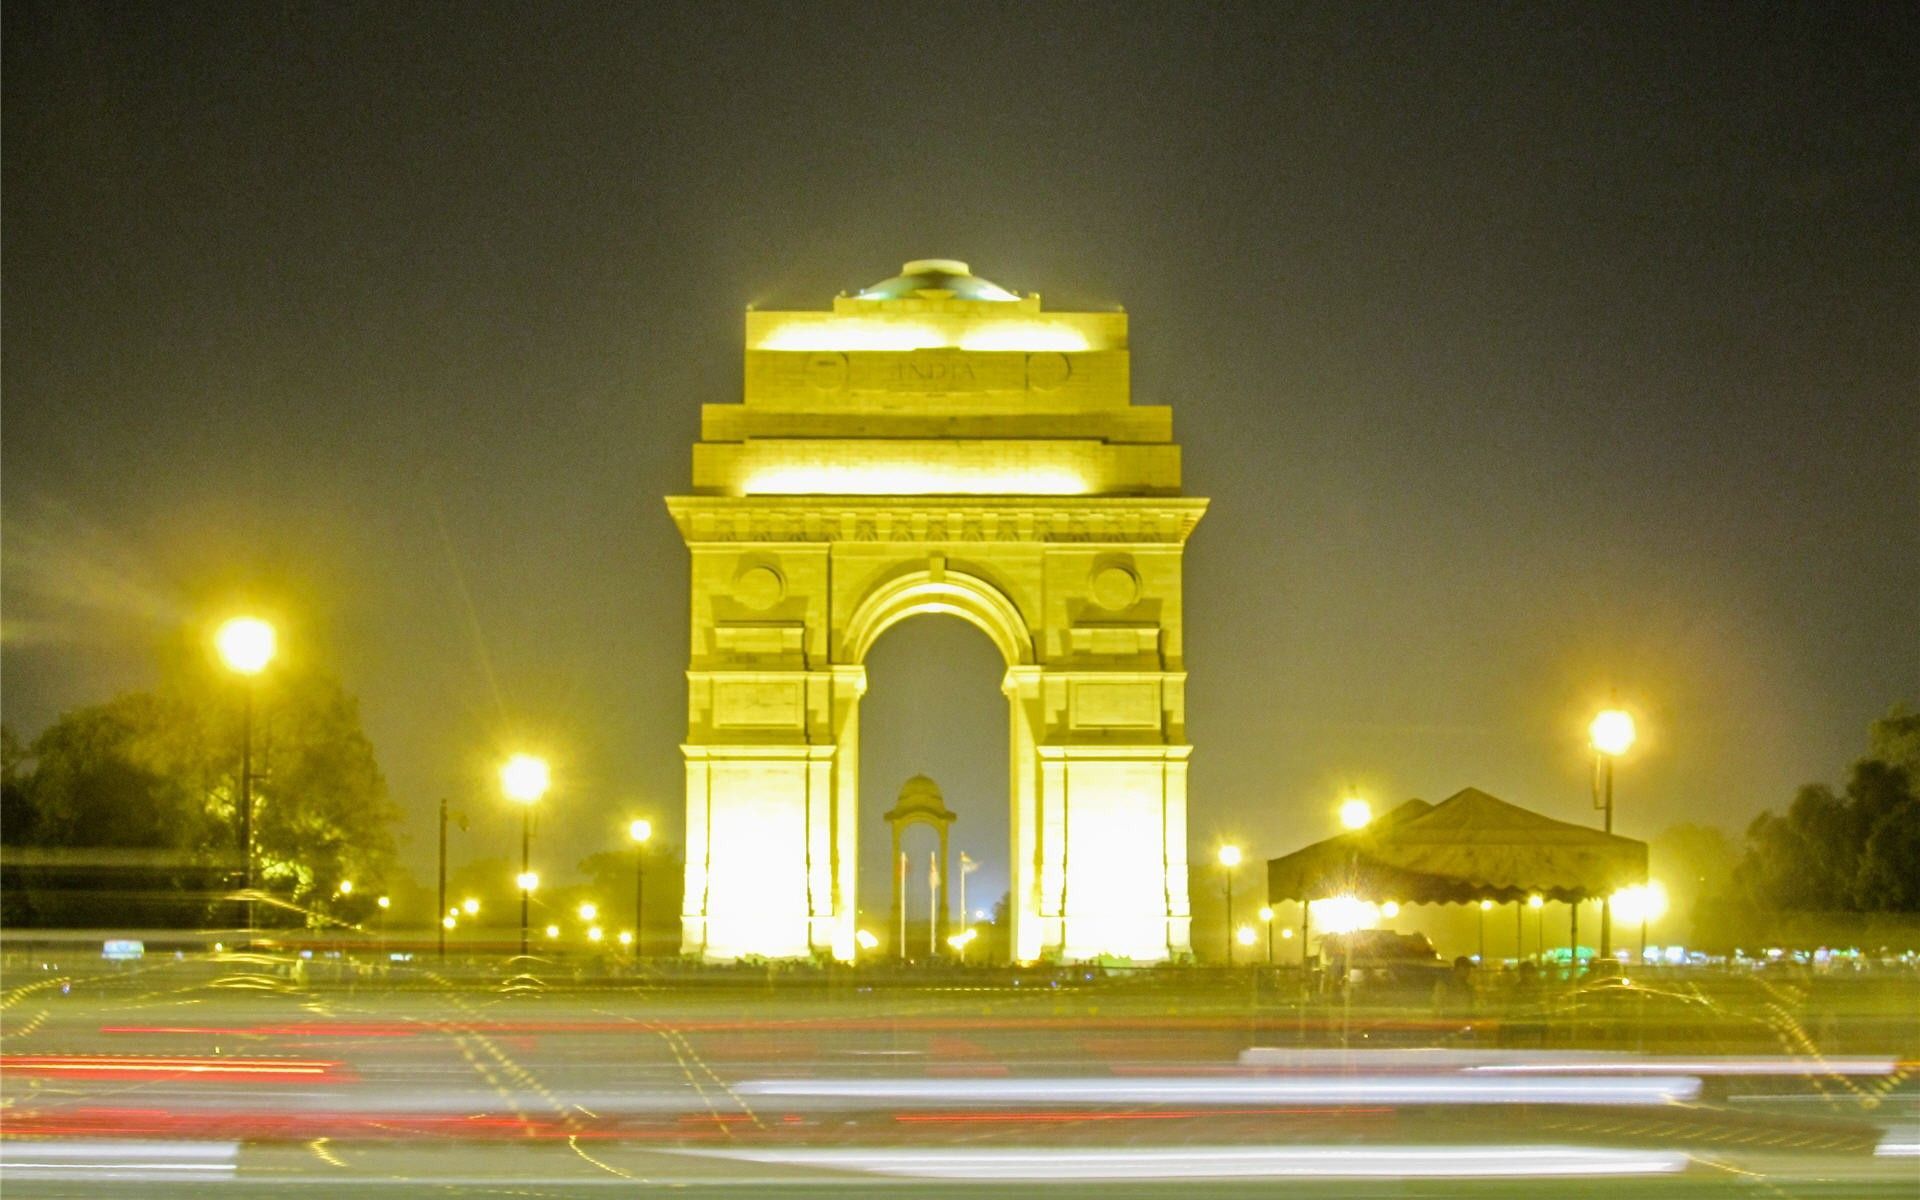 india gate in night delhi travel guide. Delhi Travel Guide. Delhi travel, India gate, Travel guide